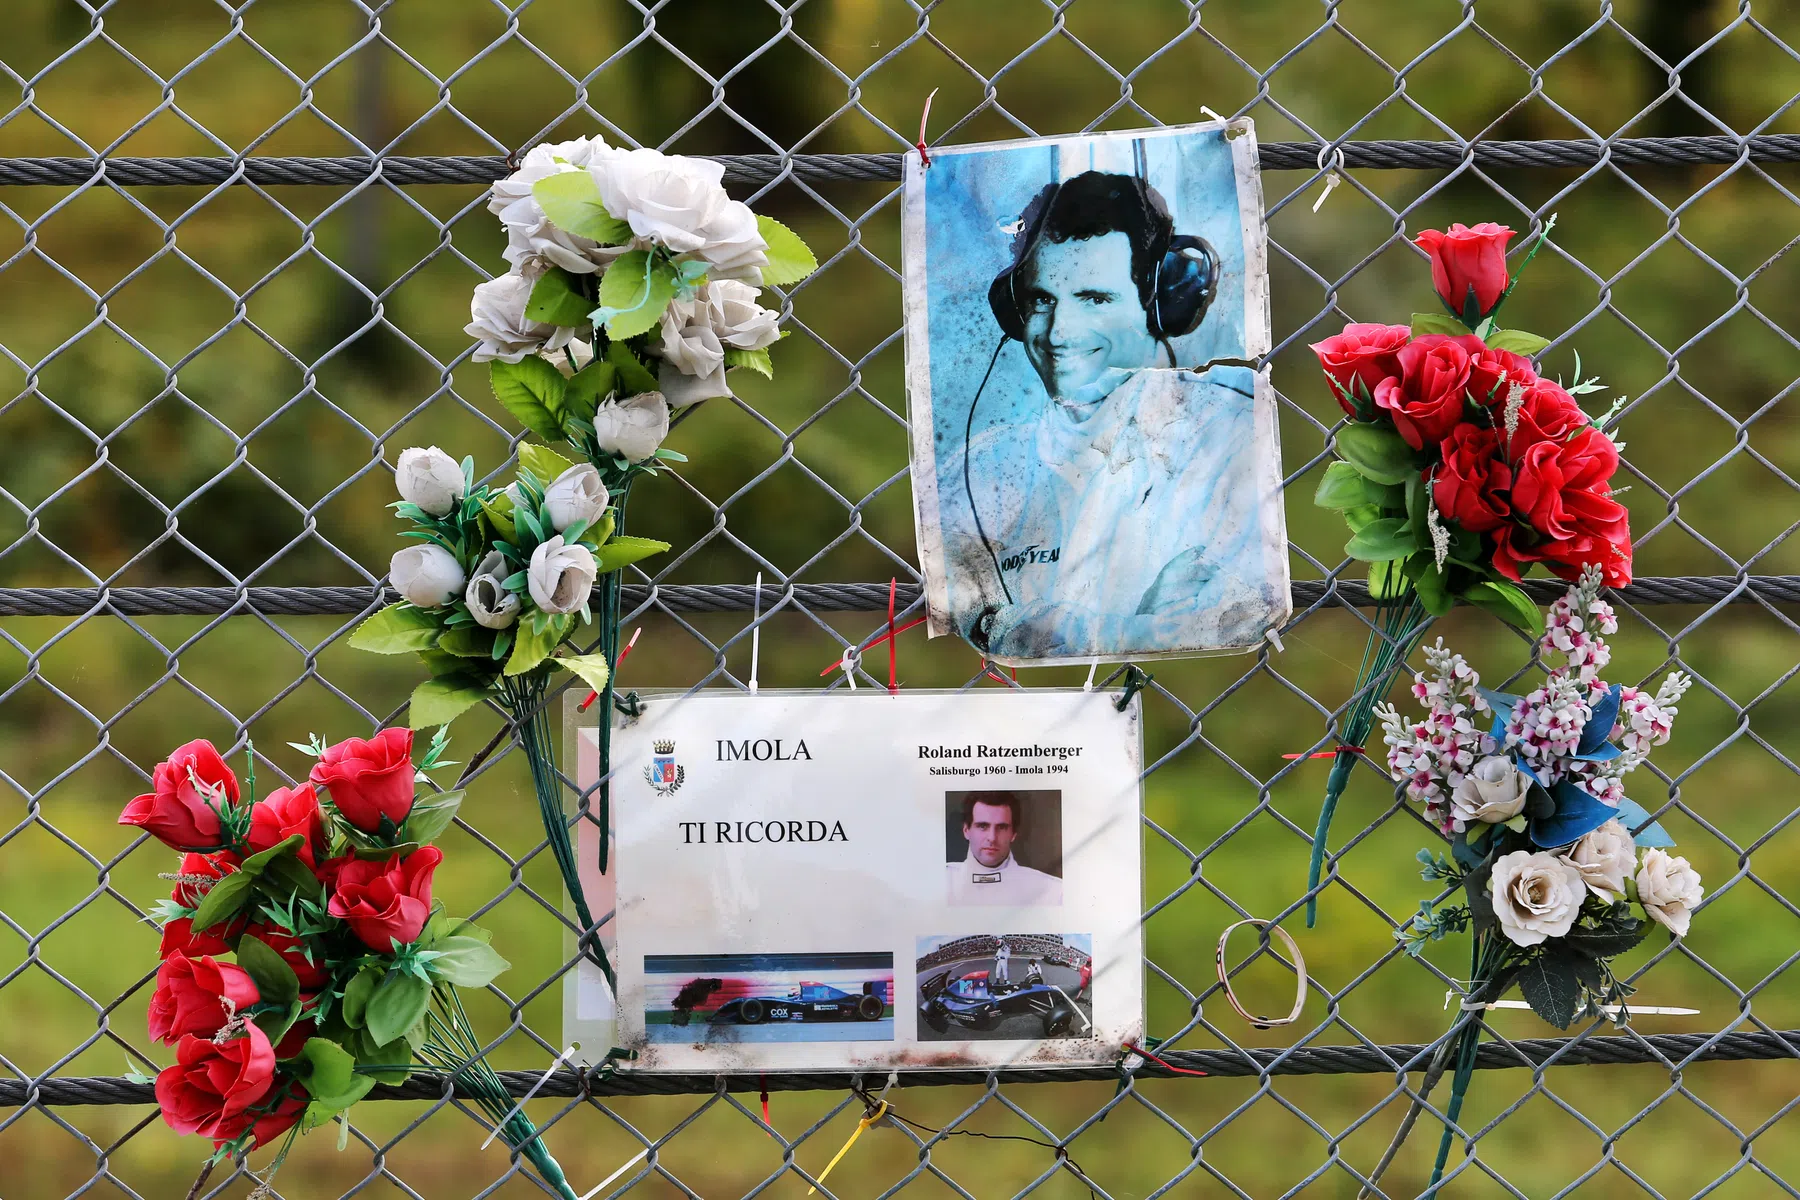 série documentaire sur roland ratzenberger après sa mort tragique à imola en 1994